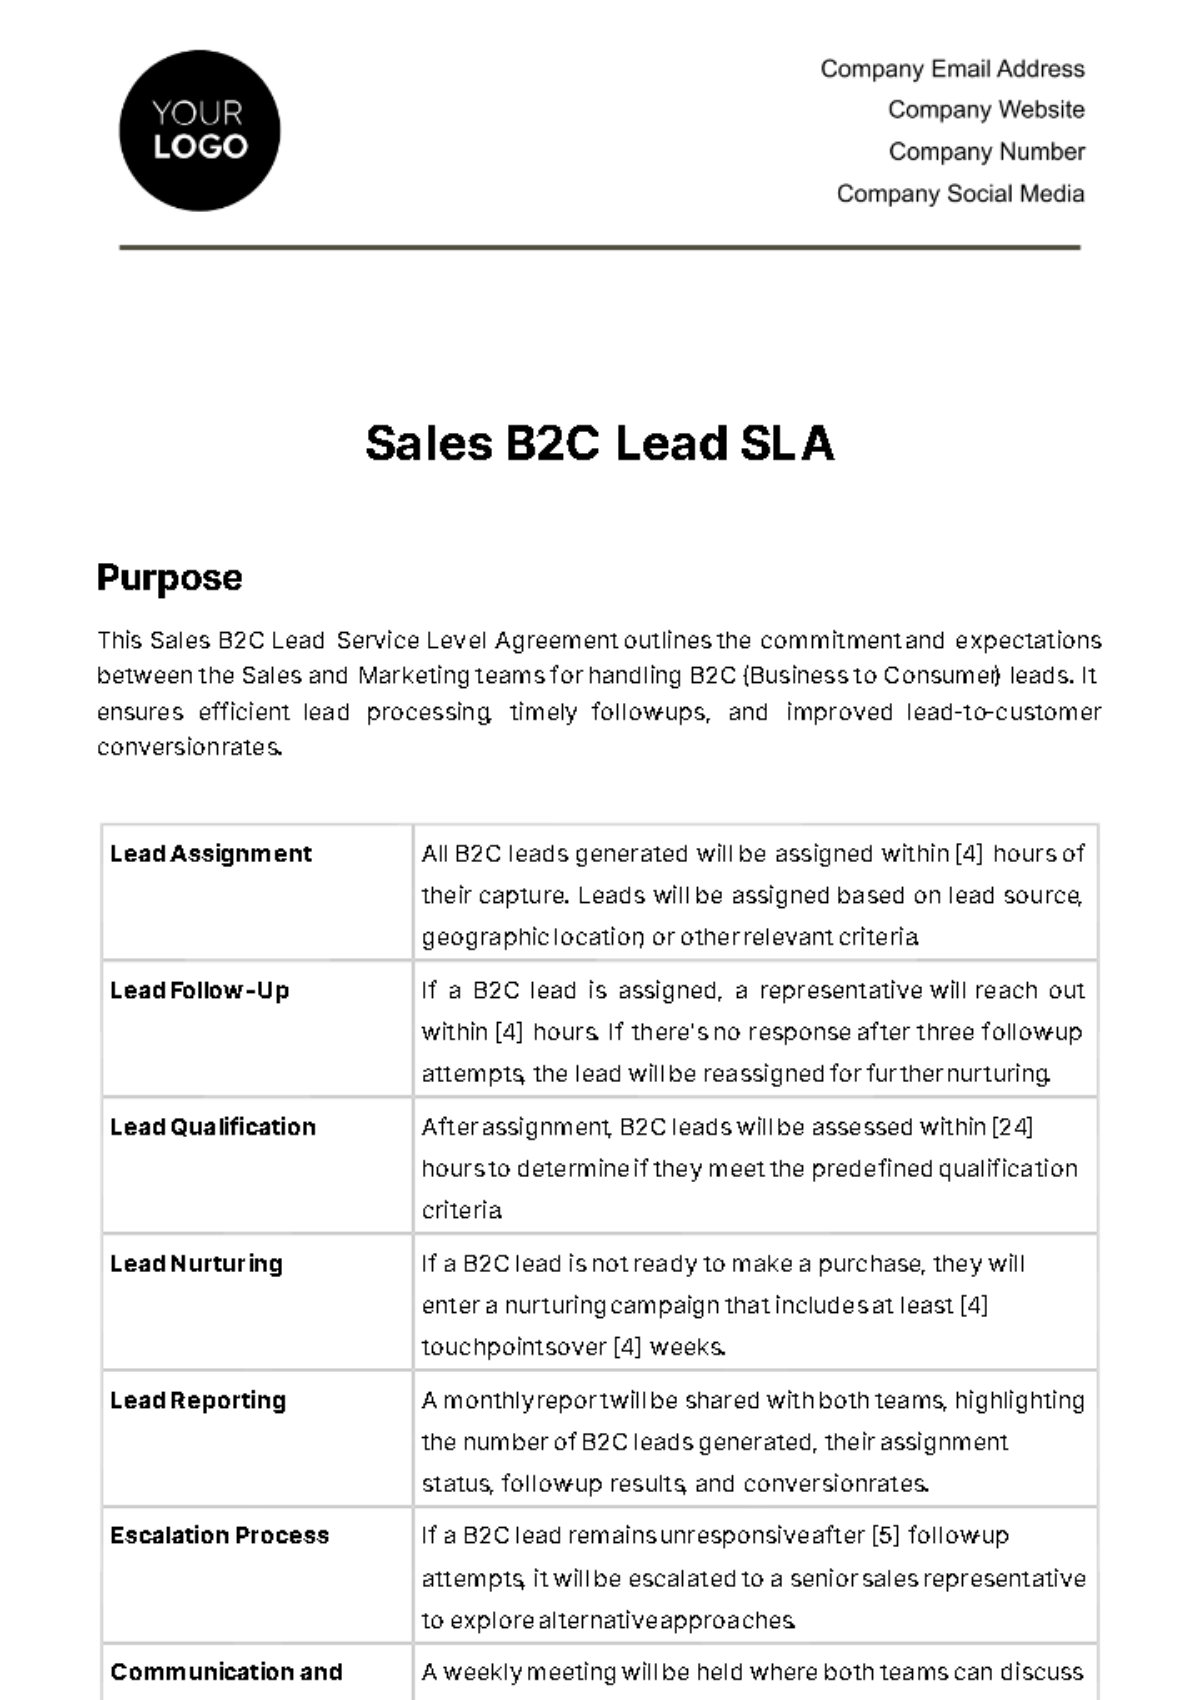 Free Sales B2C Lead SLA Template